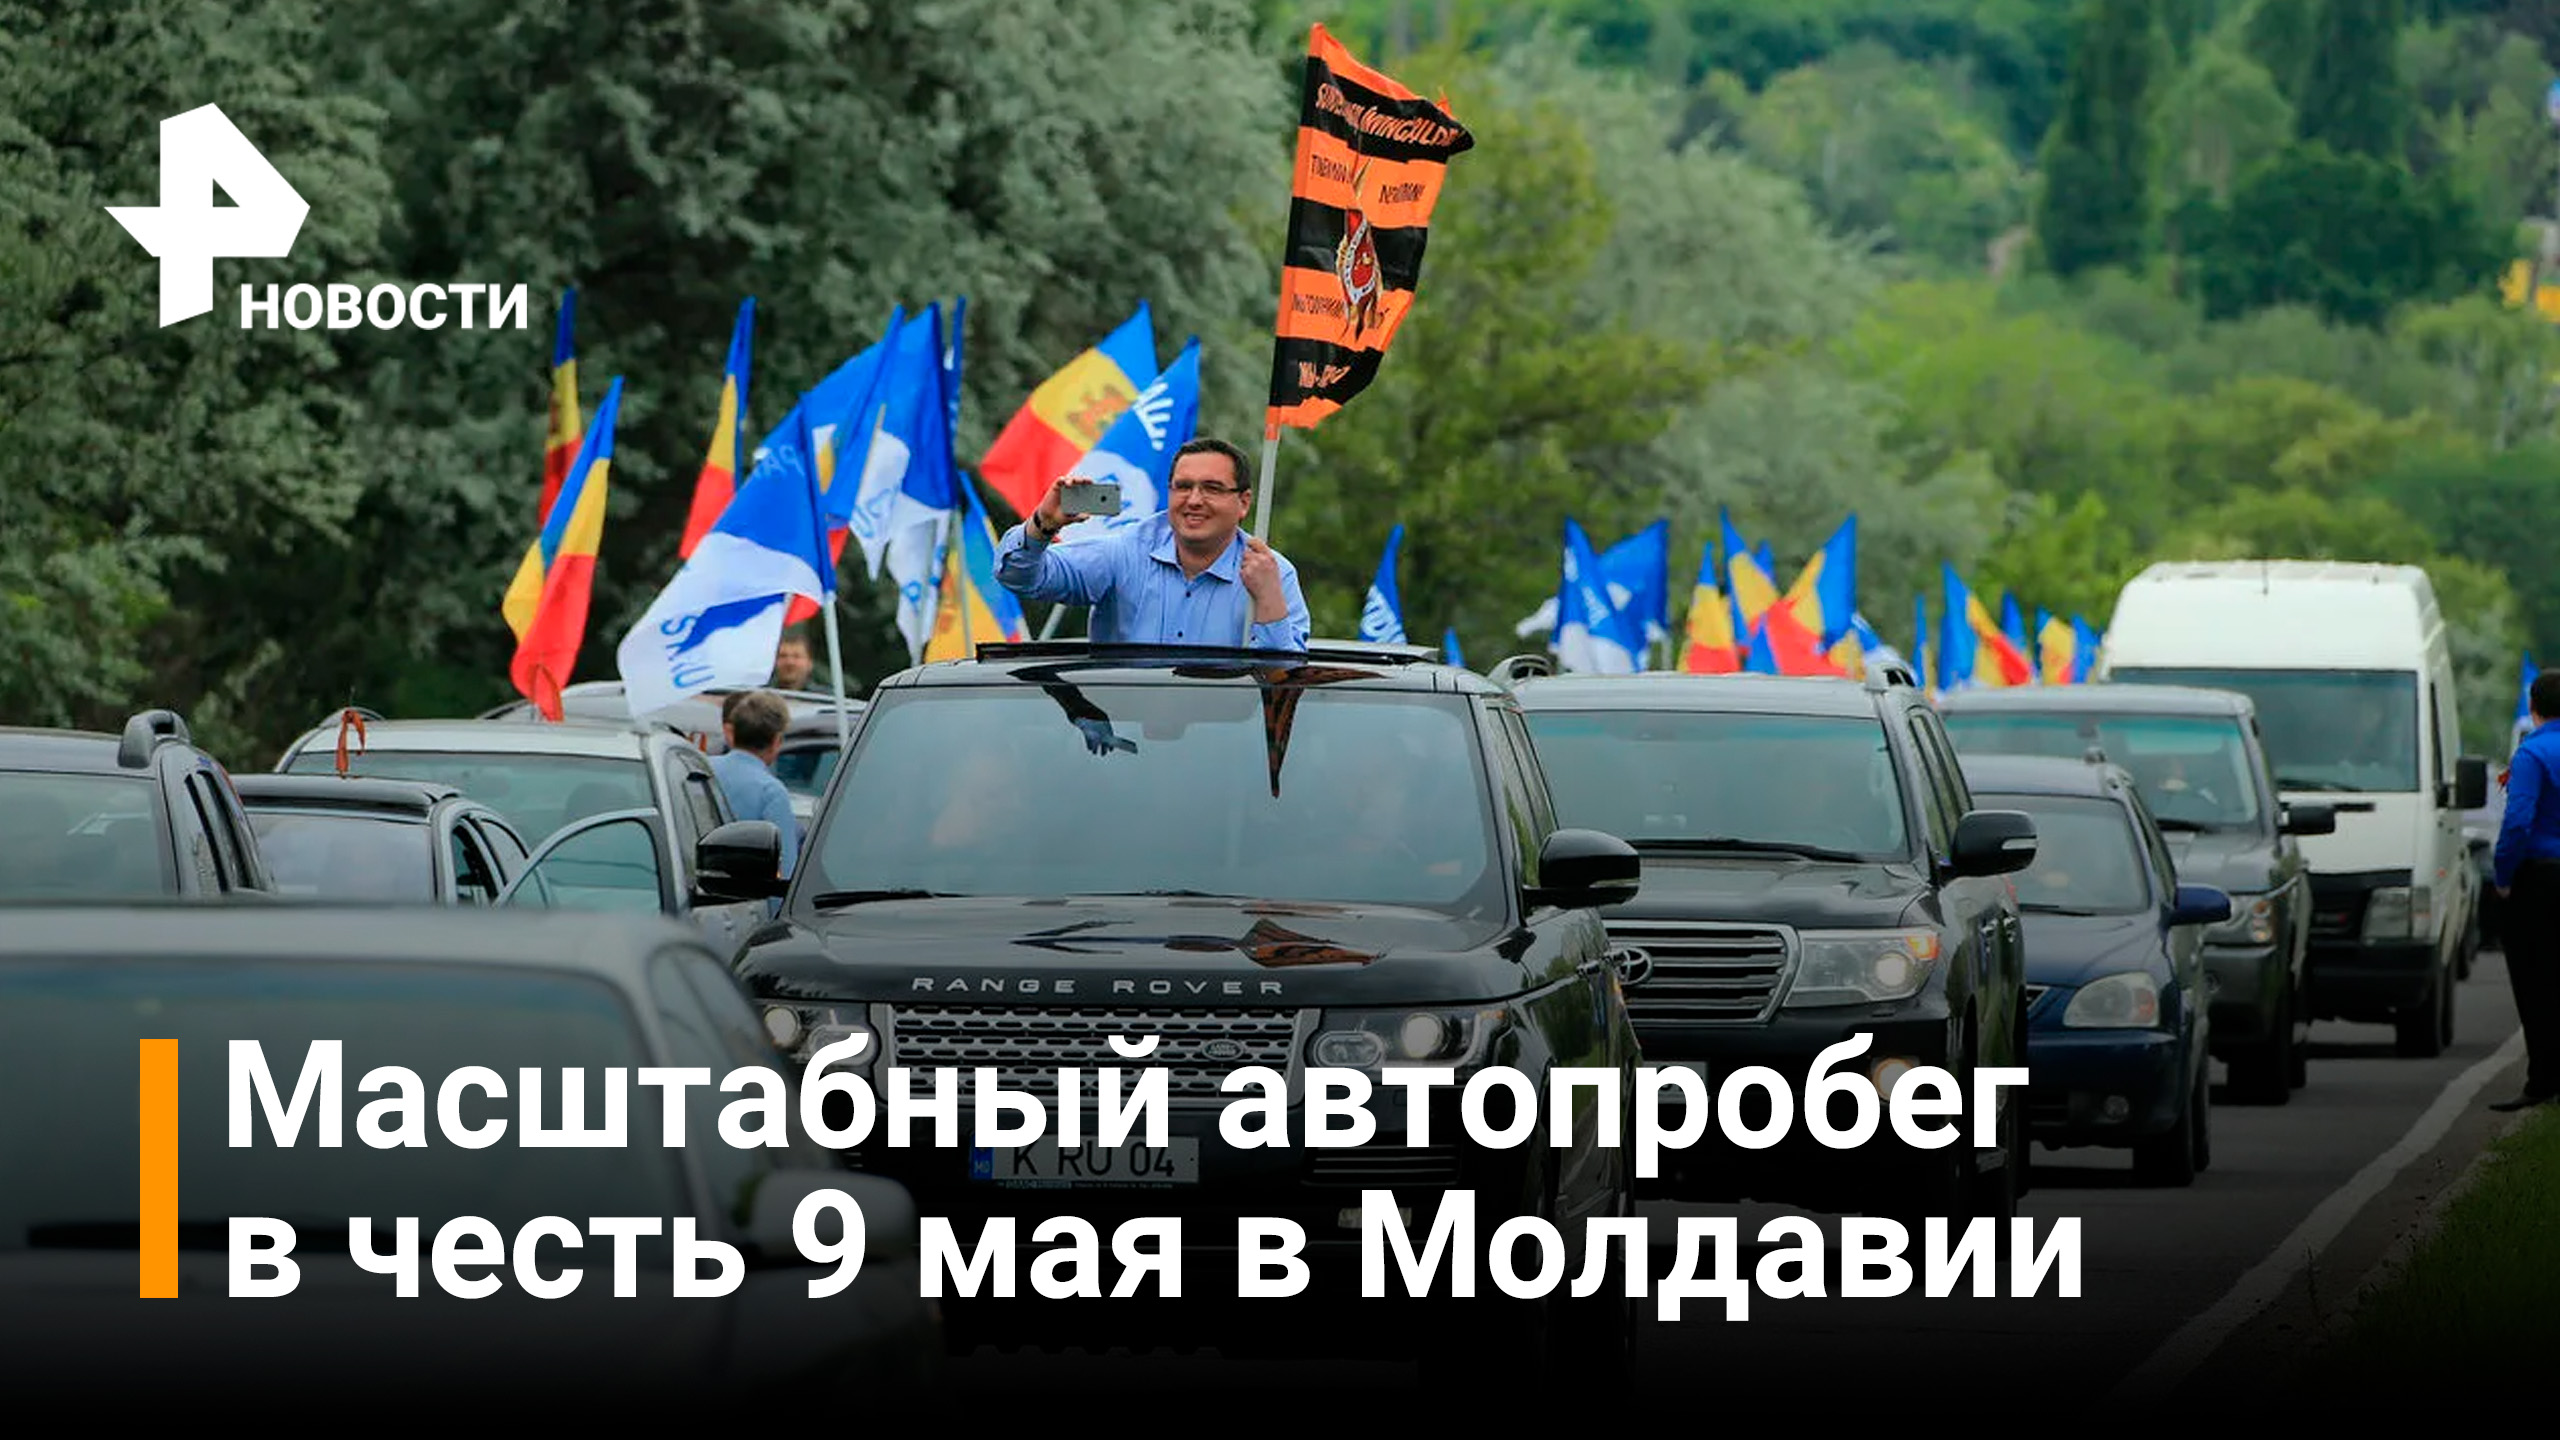 В Молдавии прошел автопробег с запрещенной там георгиевской лентой / РЕН Новости